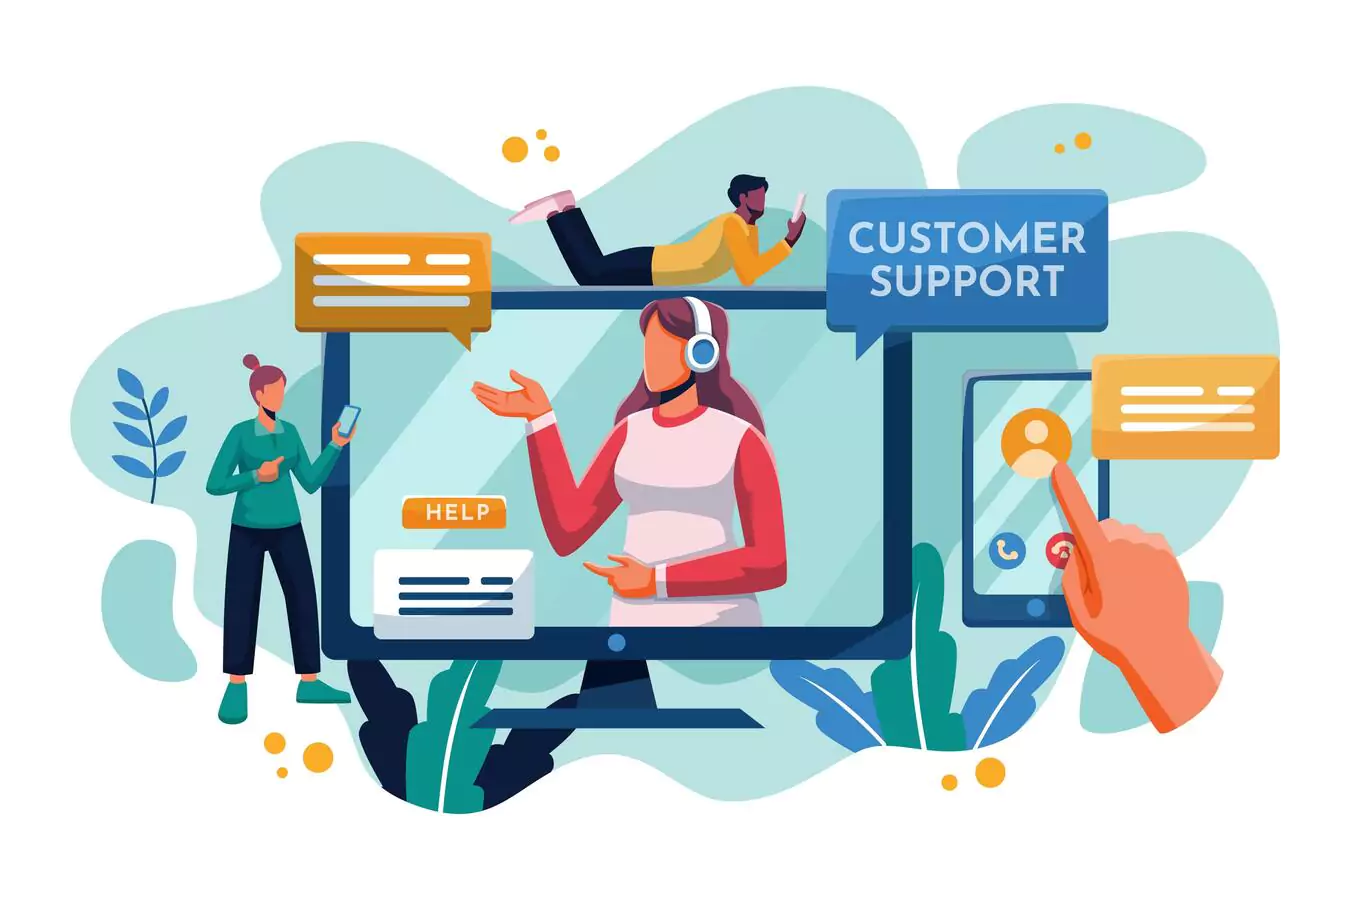 Customer Support Teams